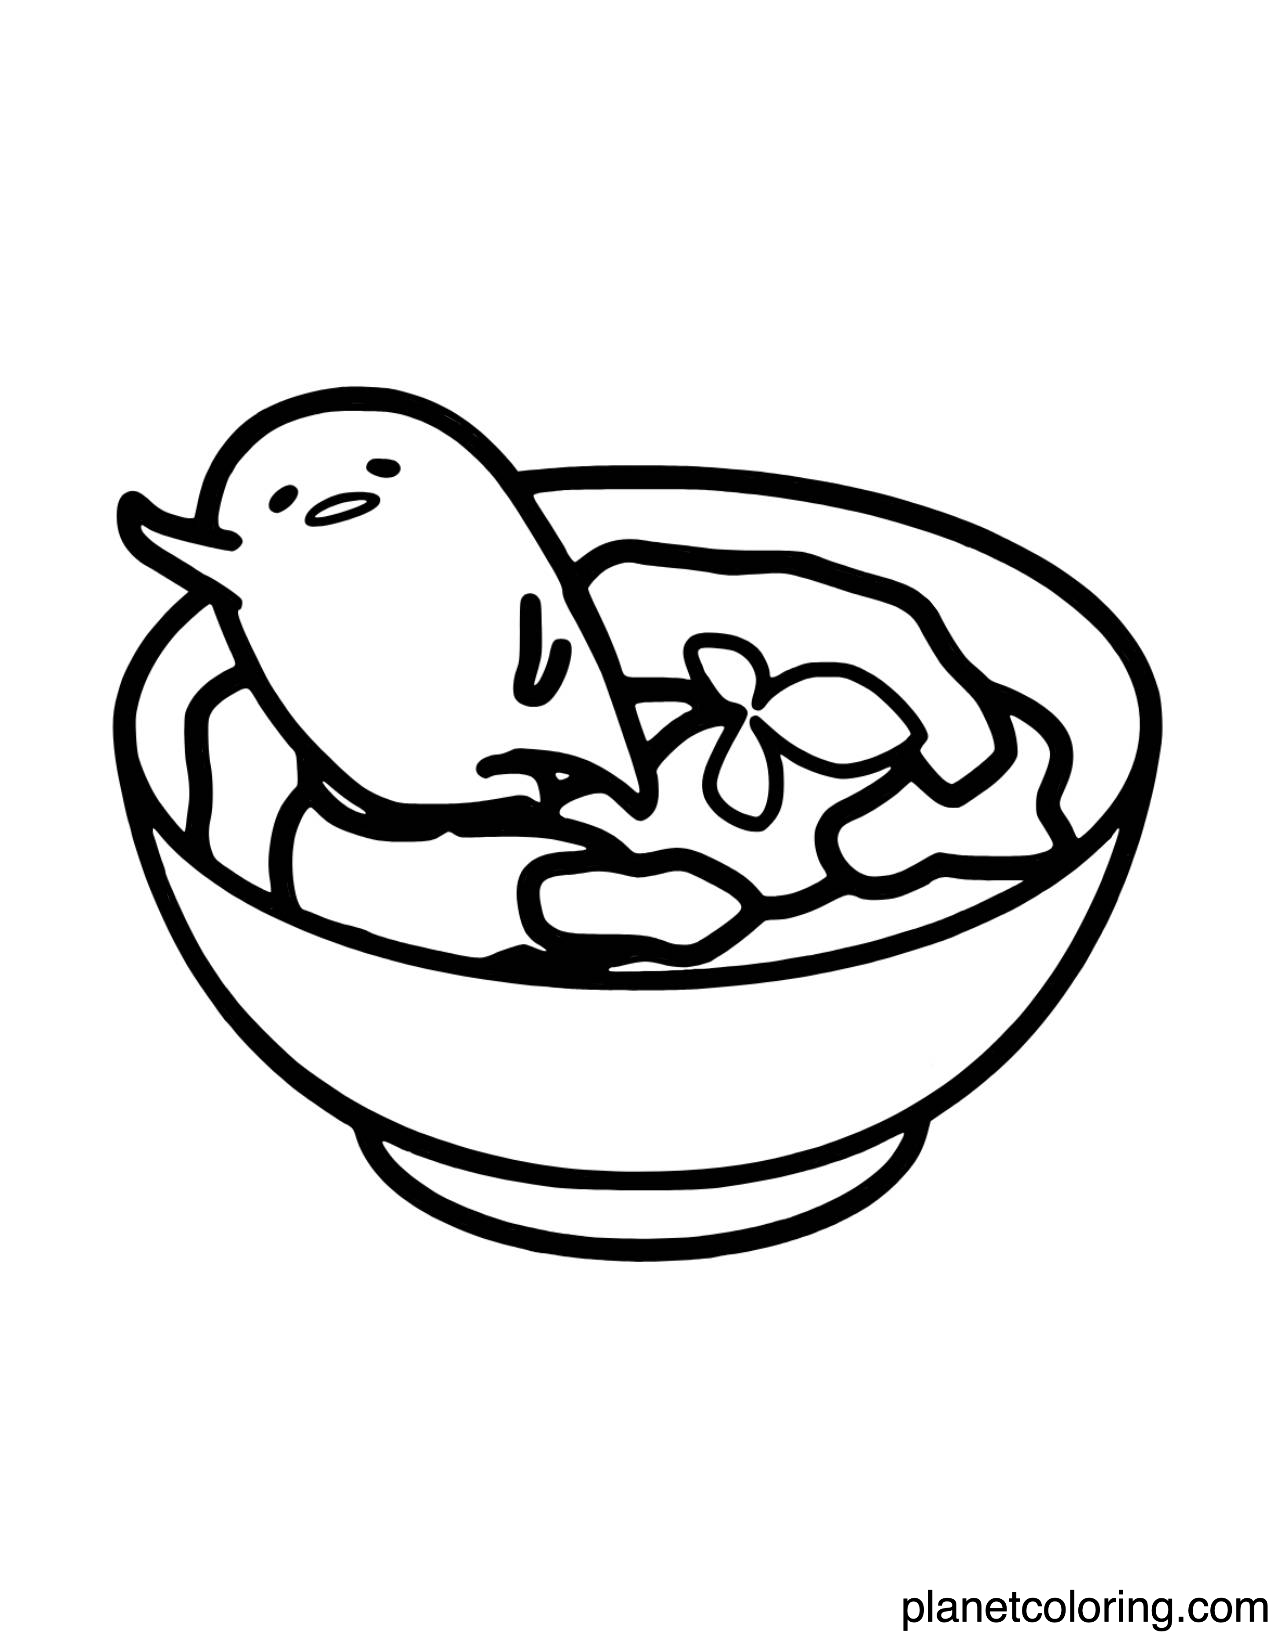 Gudetama food bowl